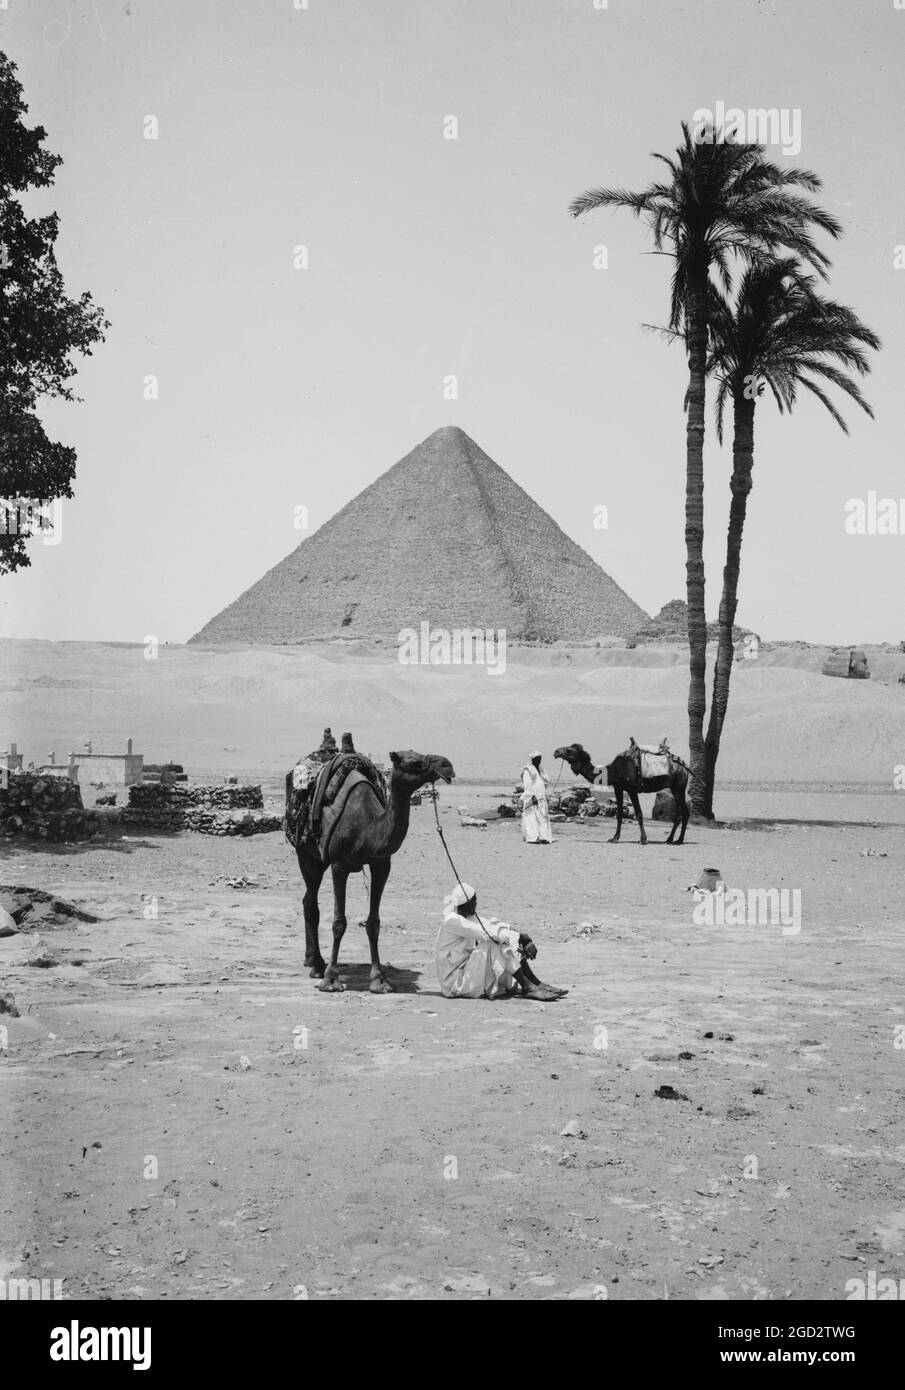 Die Pyramiden von Gizeh, die große Pyramide von Kheops [d.h. Cheops] und Sphinx, Männer mit Kamelen im Vordergrund ca. 1900 Stockfoto